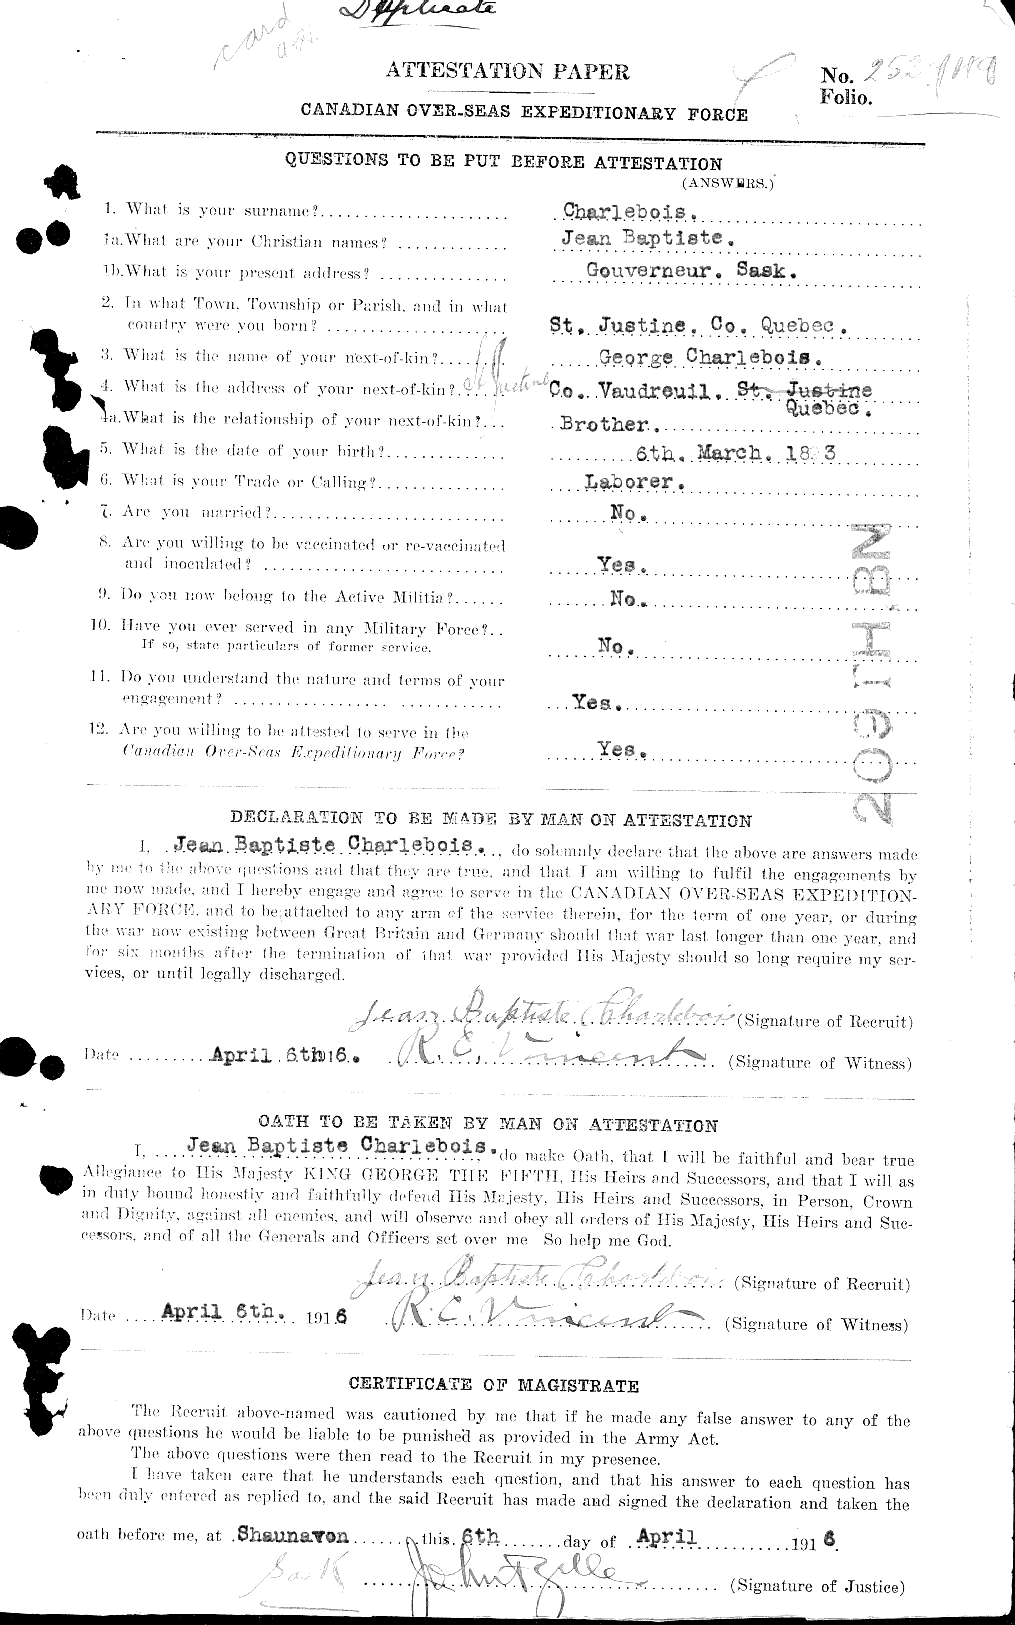 Dossiers du Personnel de la Première Guerre mondiale - CEC 015619a